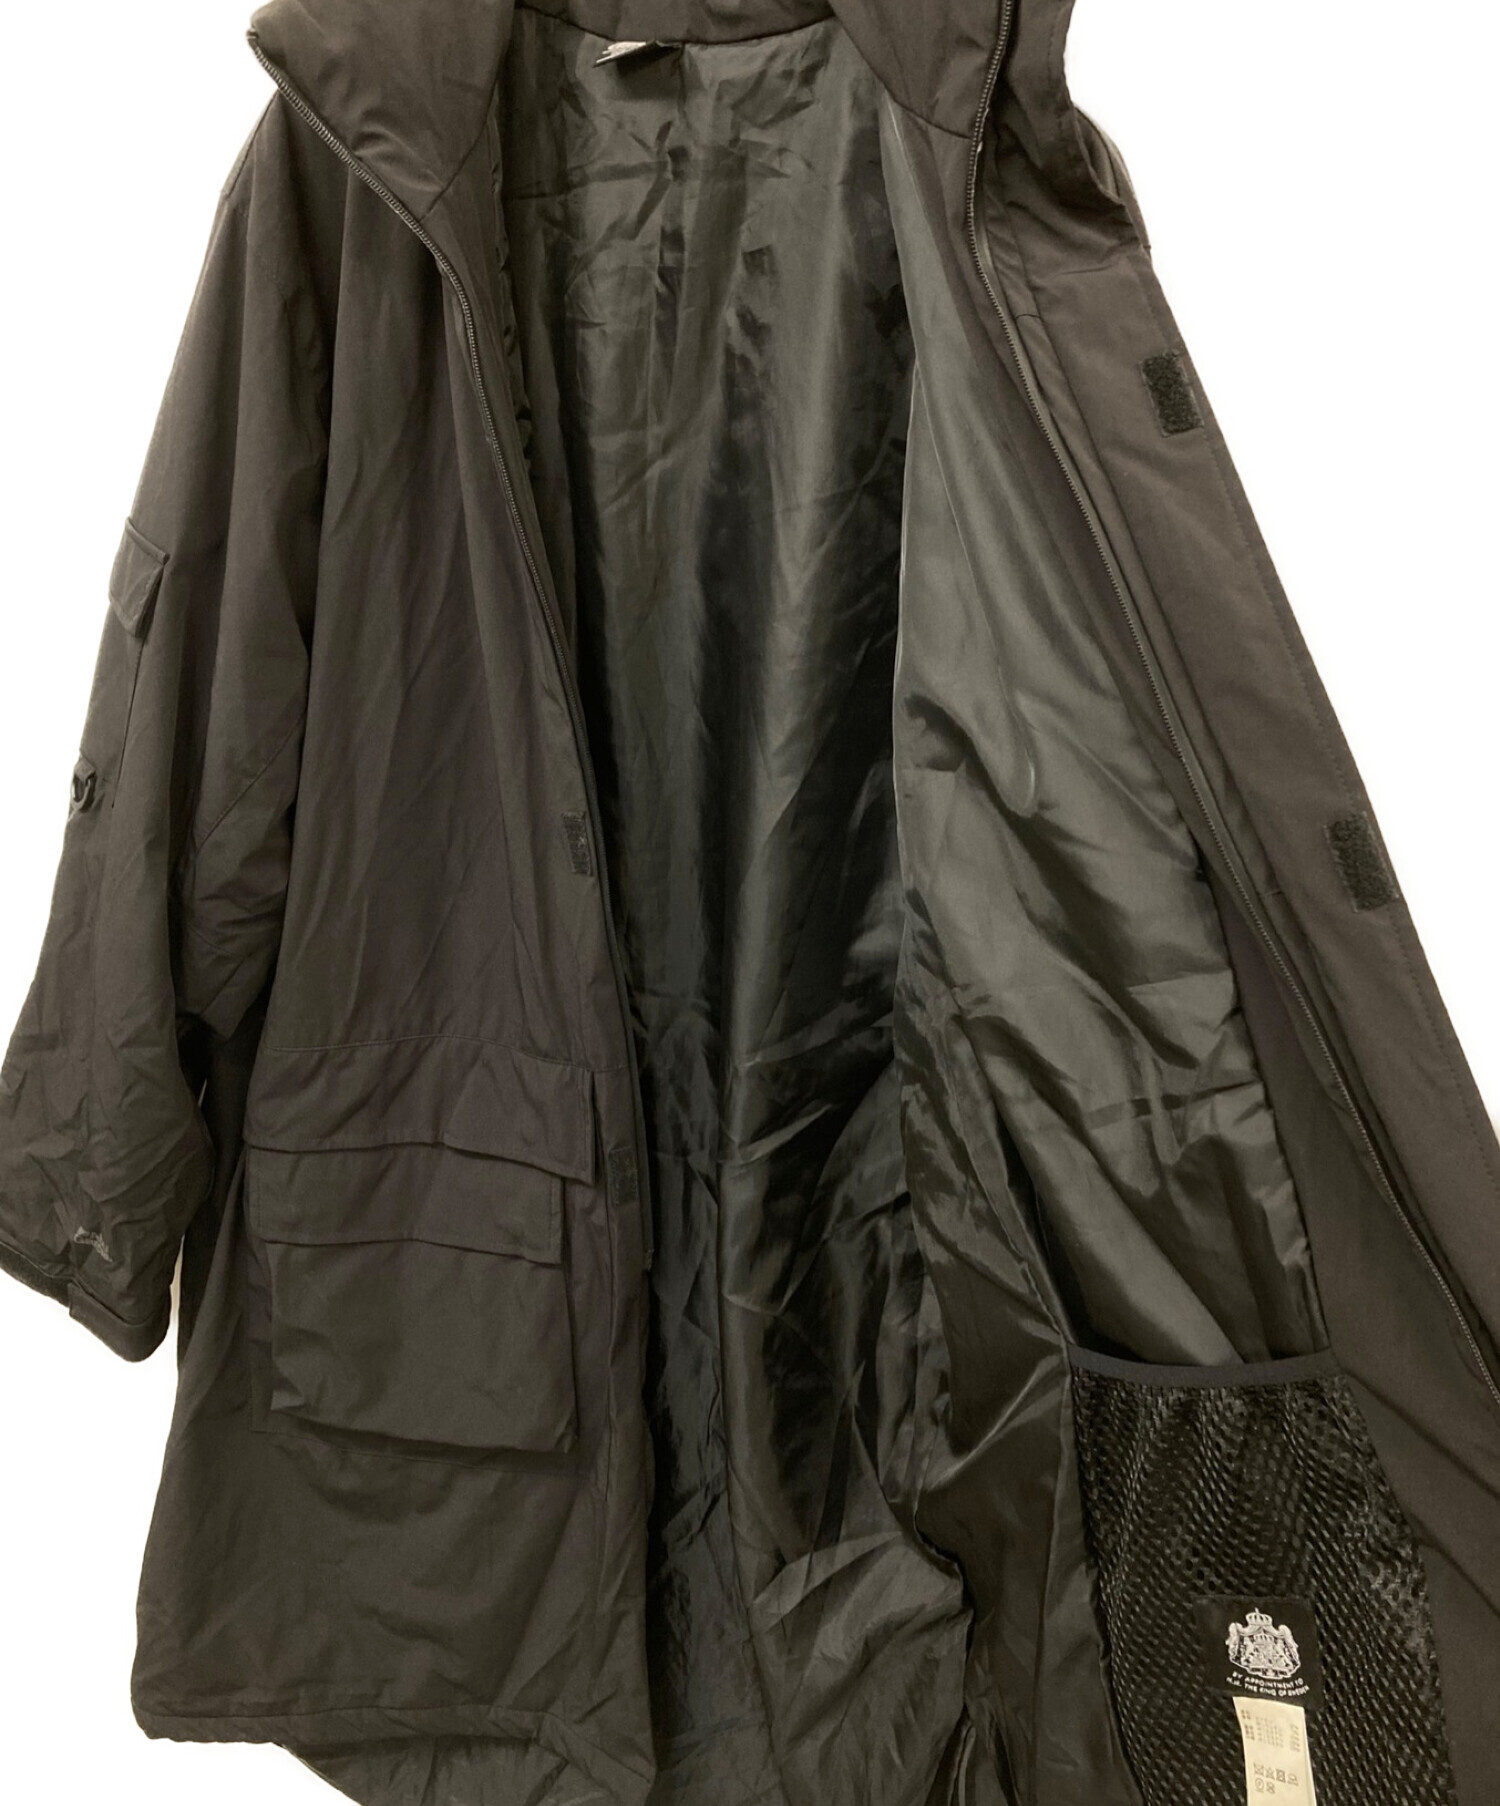 Abu Garcia×BEAMS (アブガルシア×ビームス) 別注インサレーションコート ブラック サイズ:XL